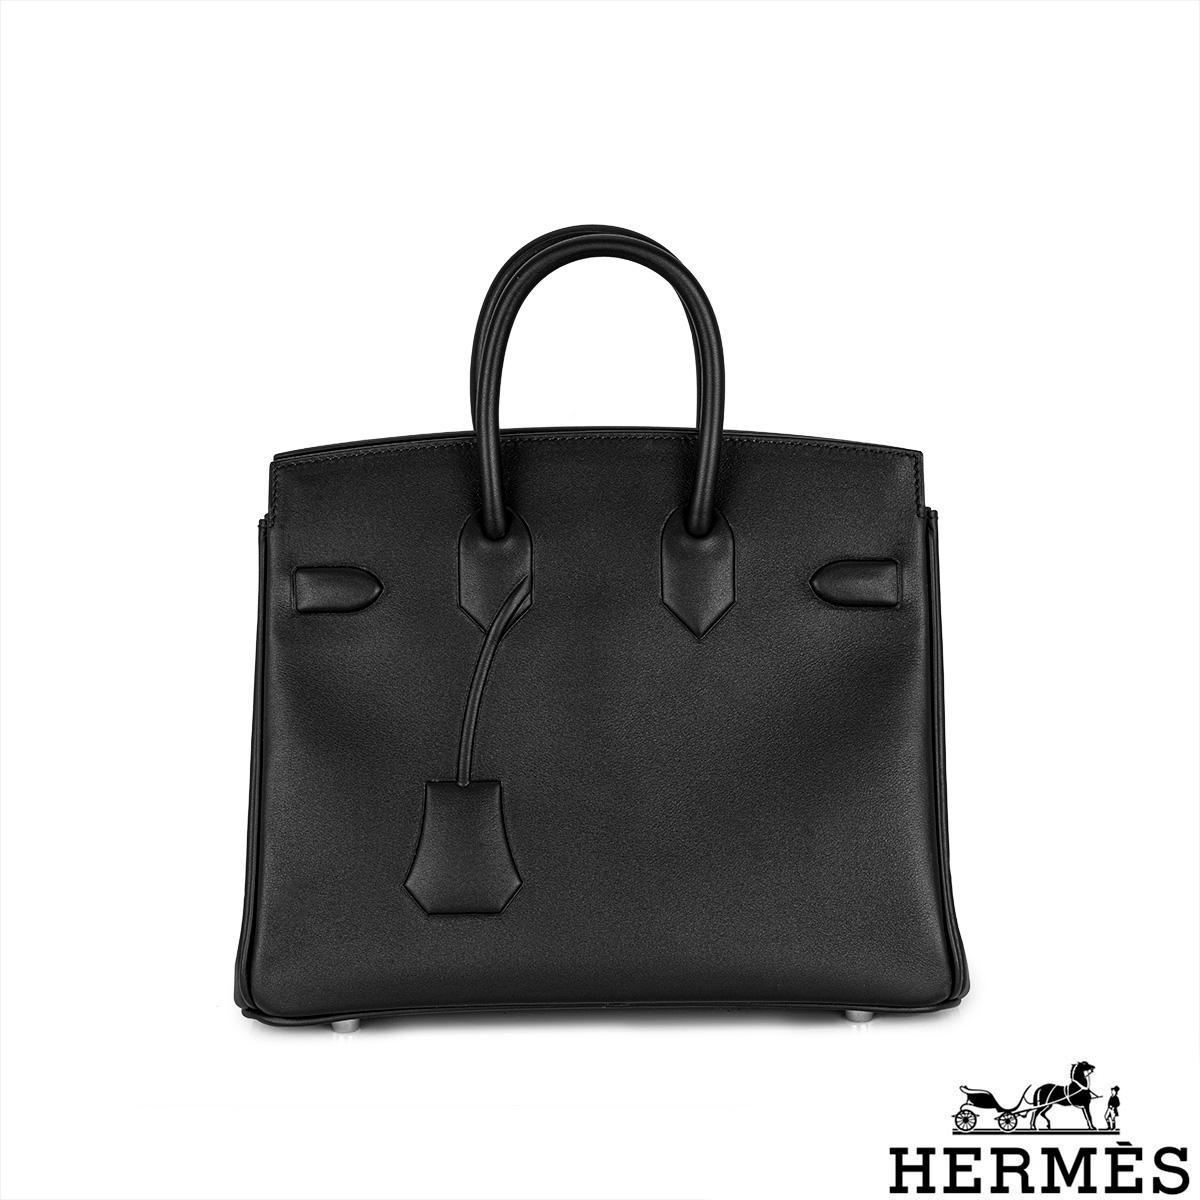 Un sac à main Hermès Birkin 25cm en édition limitée. Ce sac à main rare a été créé en 2009 par le designer français Jean Paul Gaultier comme l'essence d'un Birkin. L'extérieur de ce Birkin est réalisé en cuir Swift noir embossé avec le rabat et les